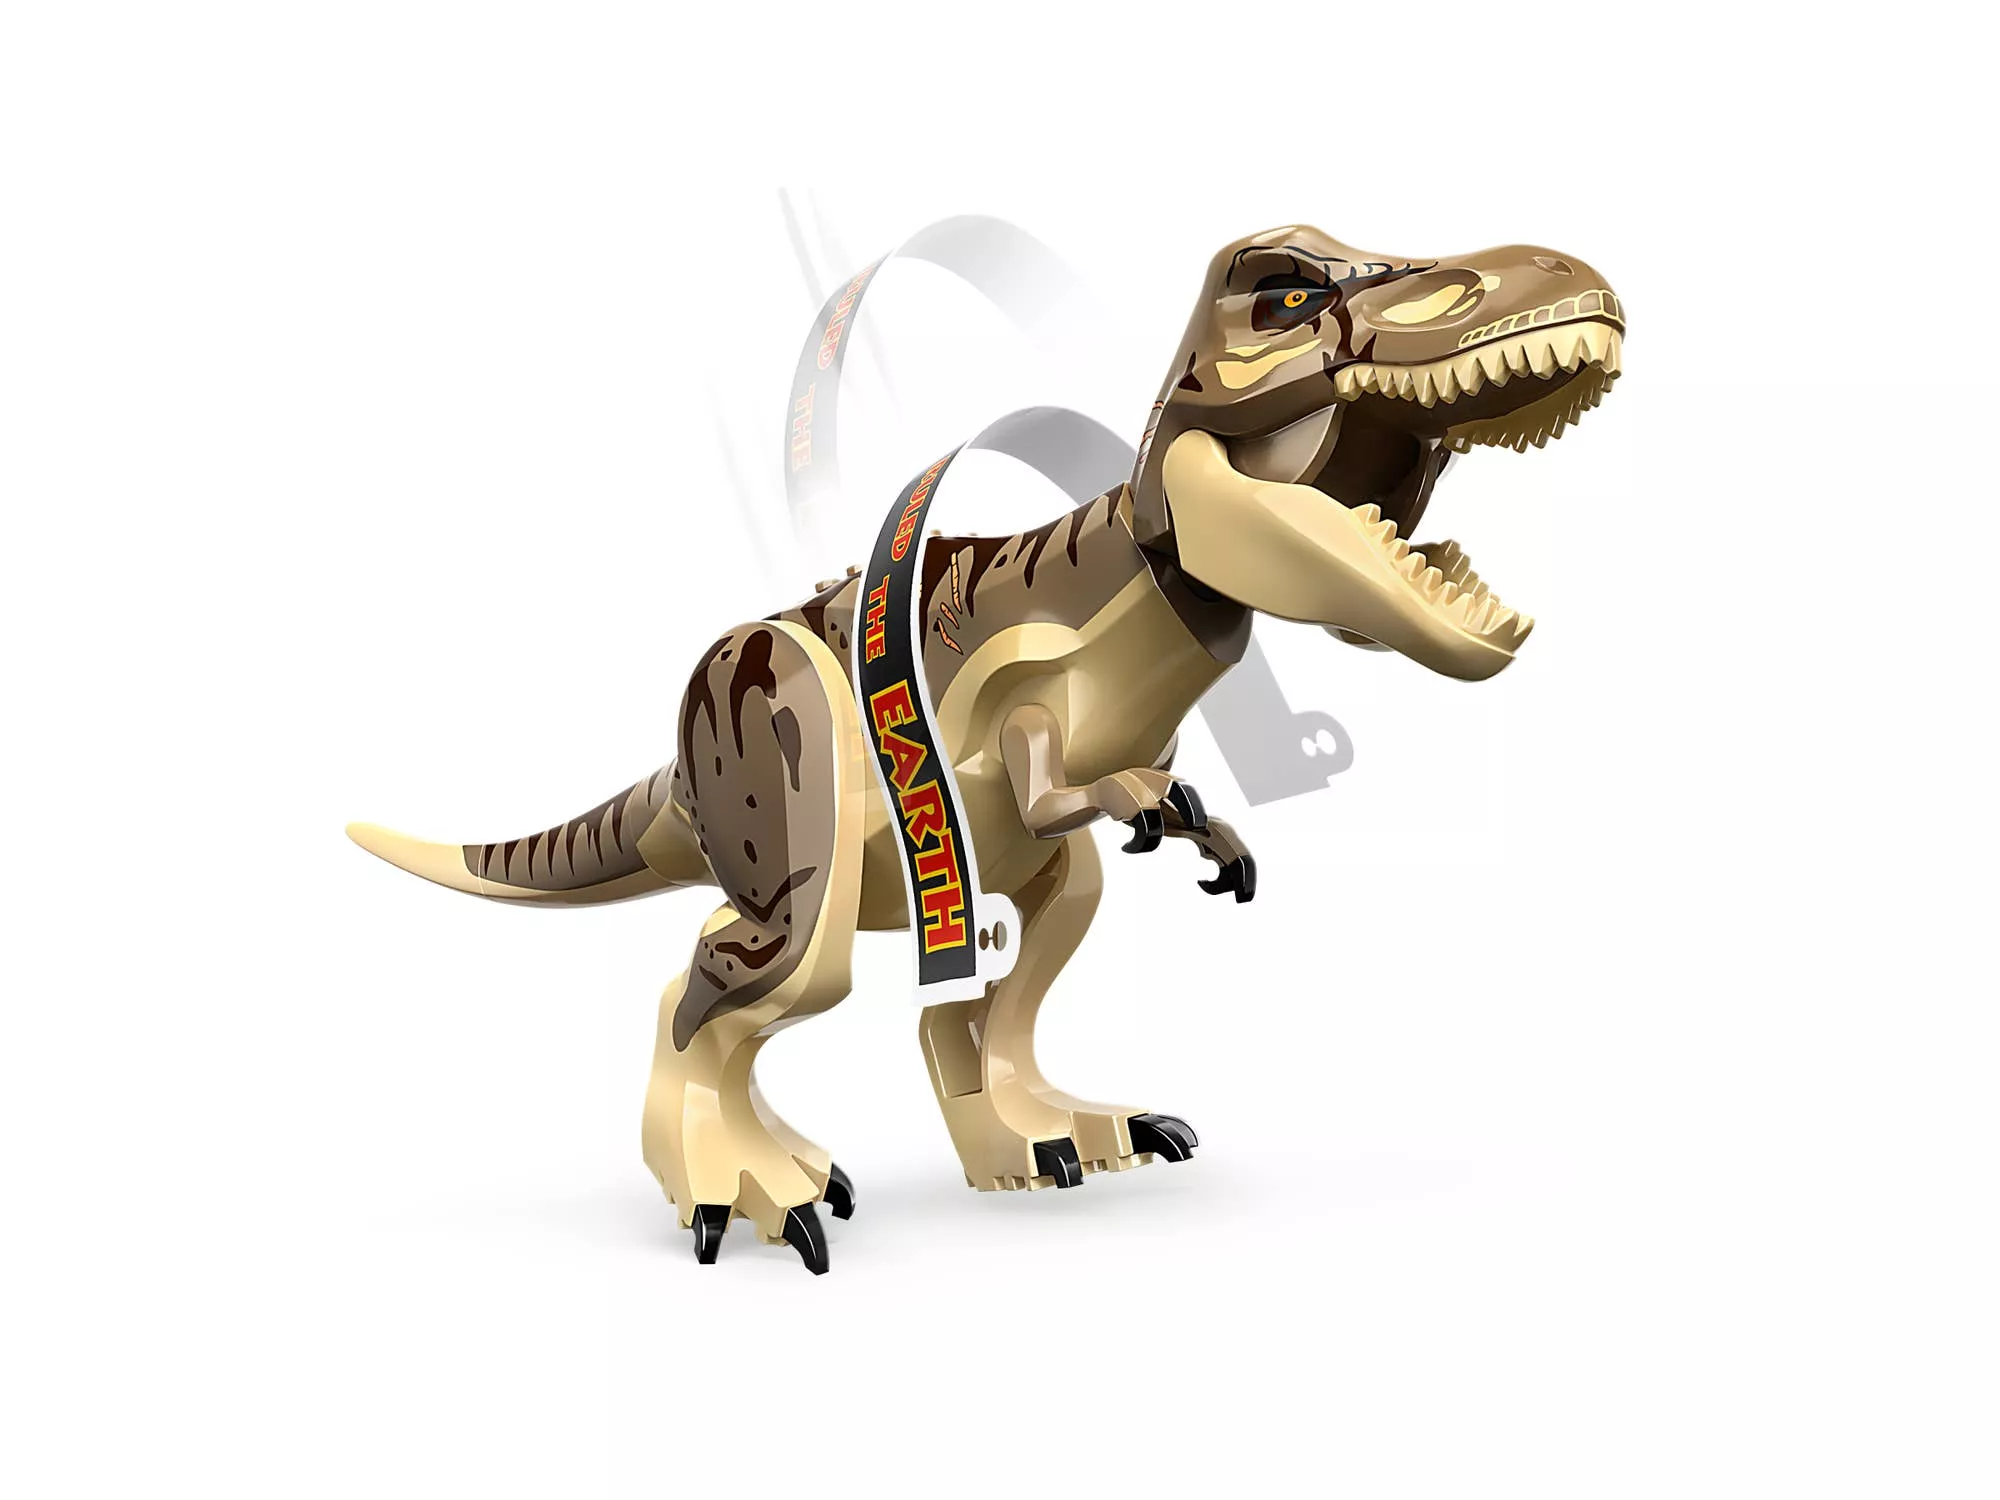 LEGO 76961 Jurassic World™ Angriff des T. rex und des Raptors aufs Besucherzentrum